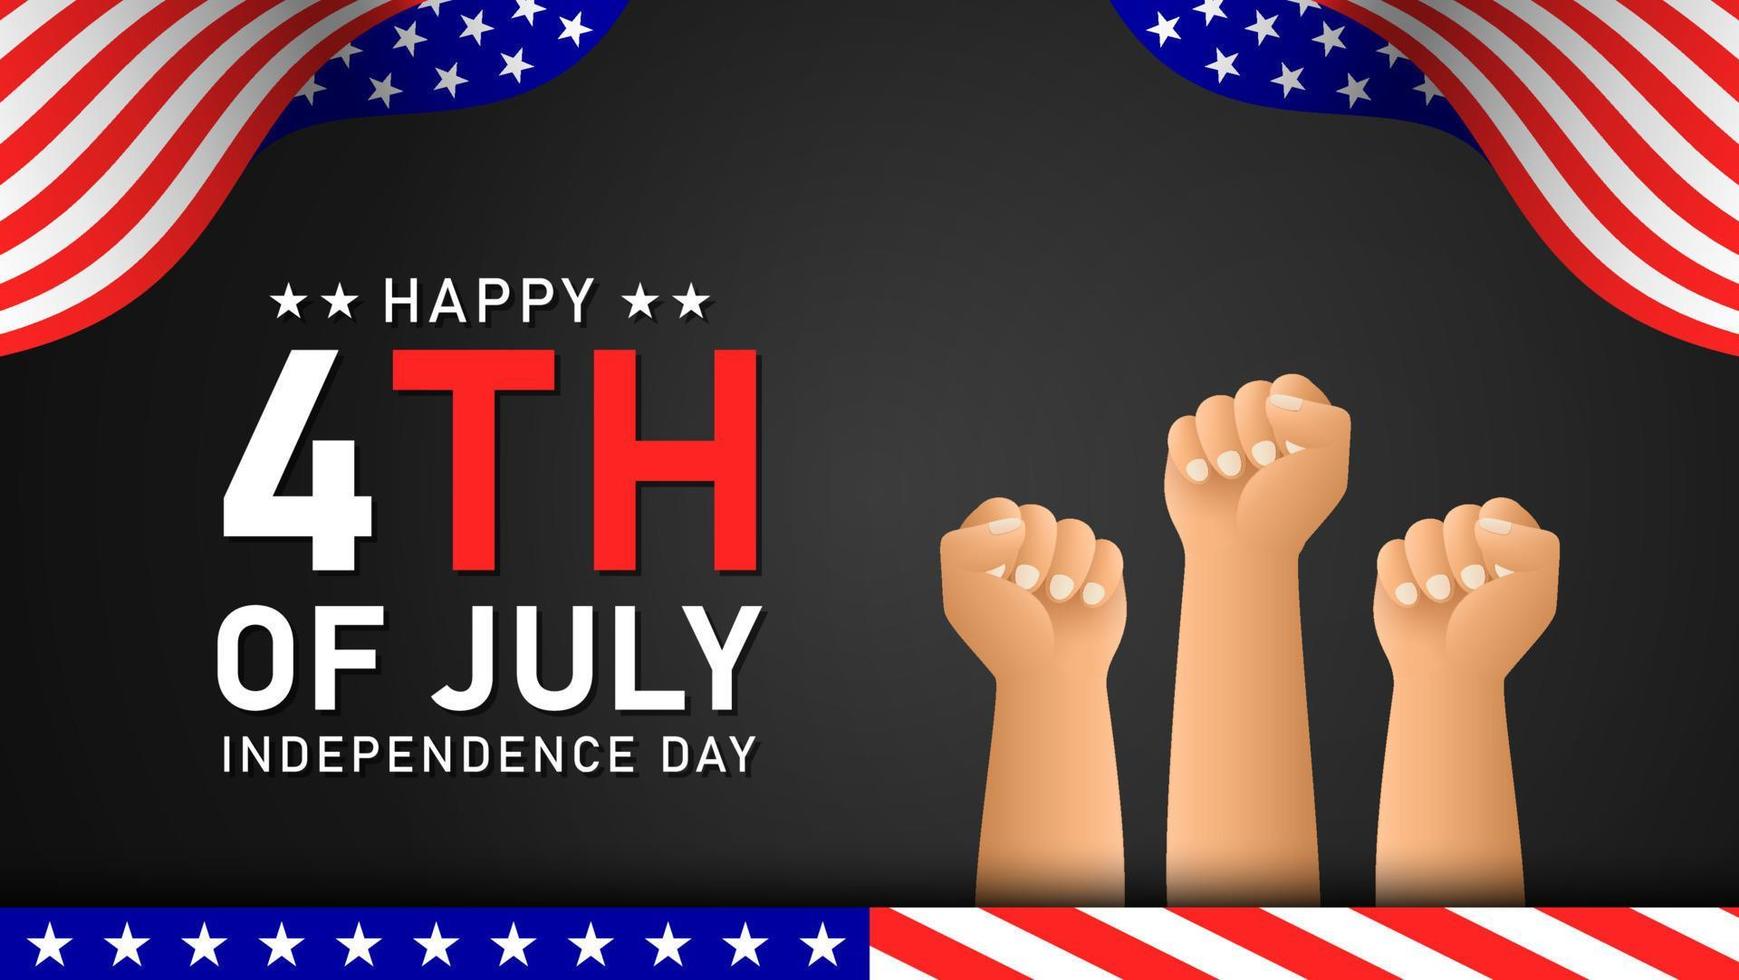 felice 4 luglio sfondo e banner per la festa dell'indipendenza dell'america vettore